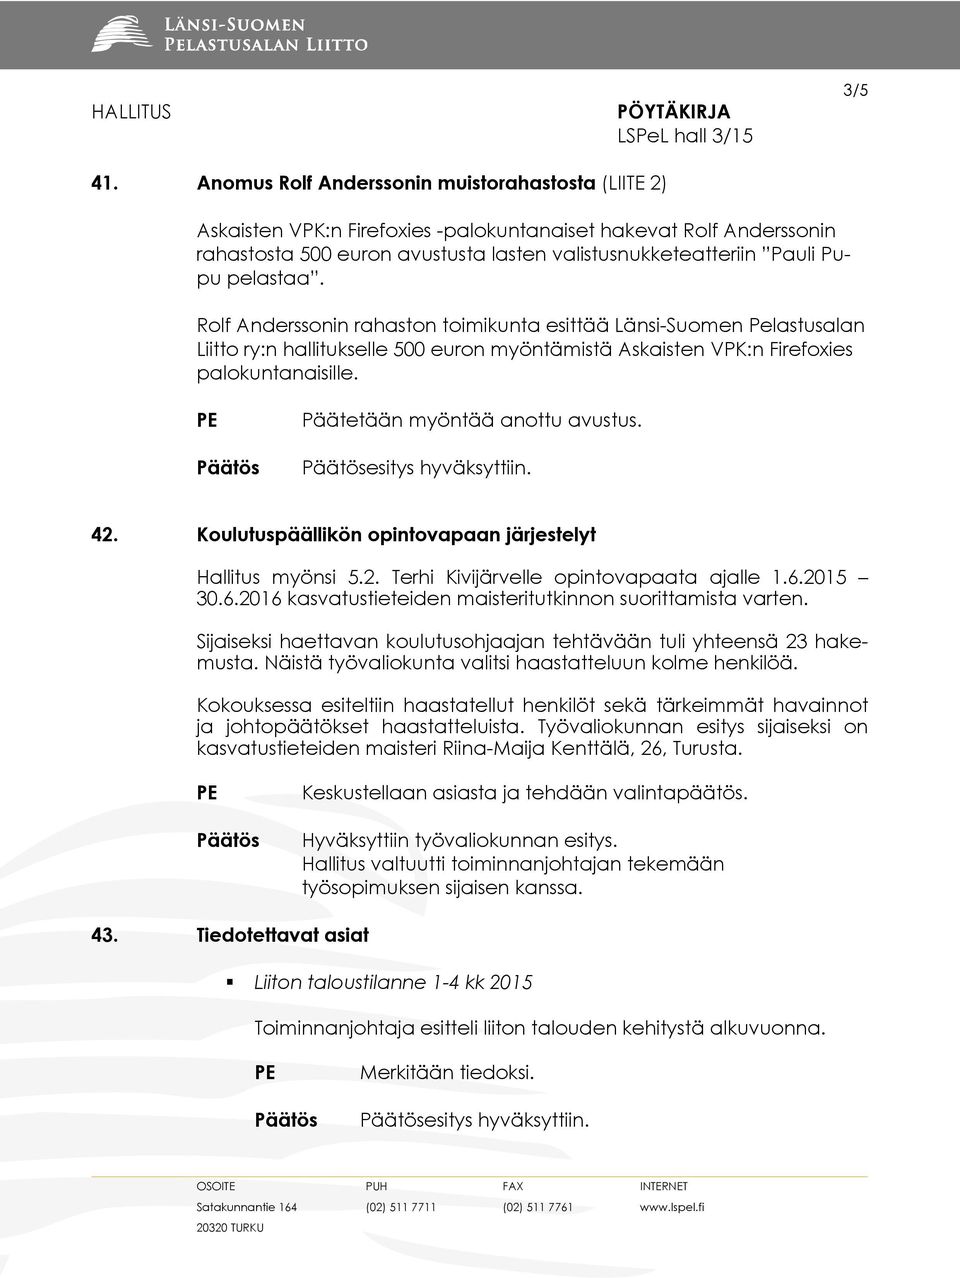 pelastaa. Rolf Anderssonin rahaston toimikunta esittää Länsi-Suomen Pelastusalan Liitto ry:n hallitukselle 500 euron myöntämistä Askaisten VPK:n Firefoxies palokuntanaisille.